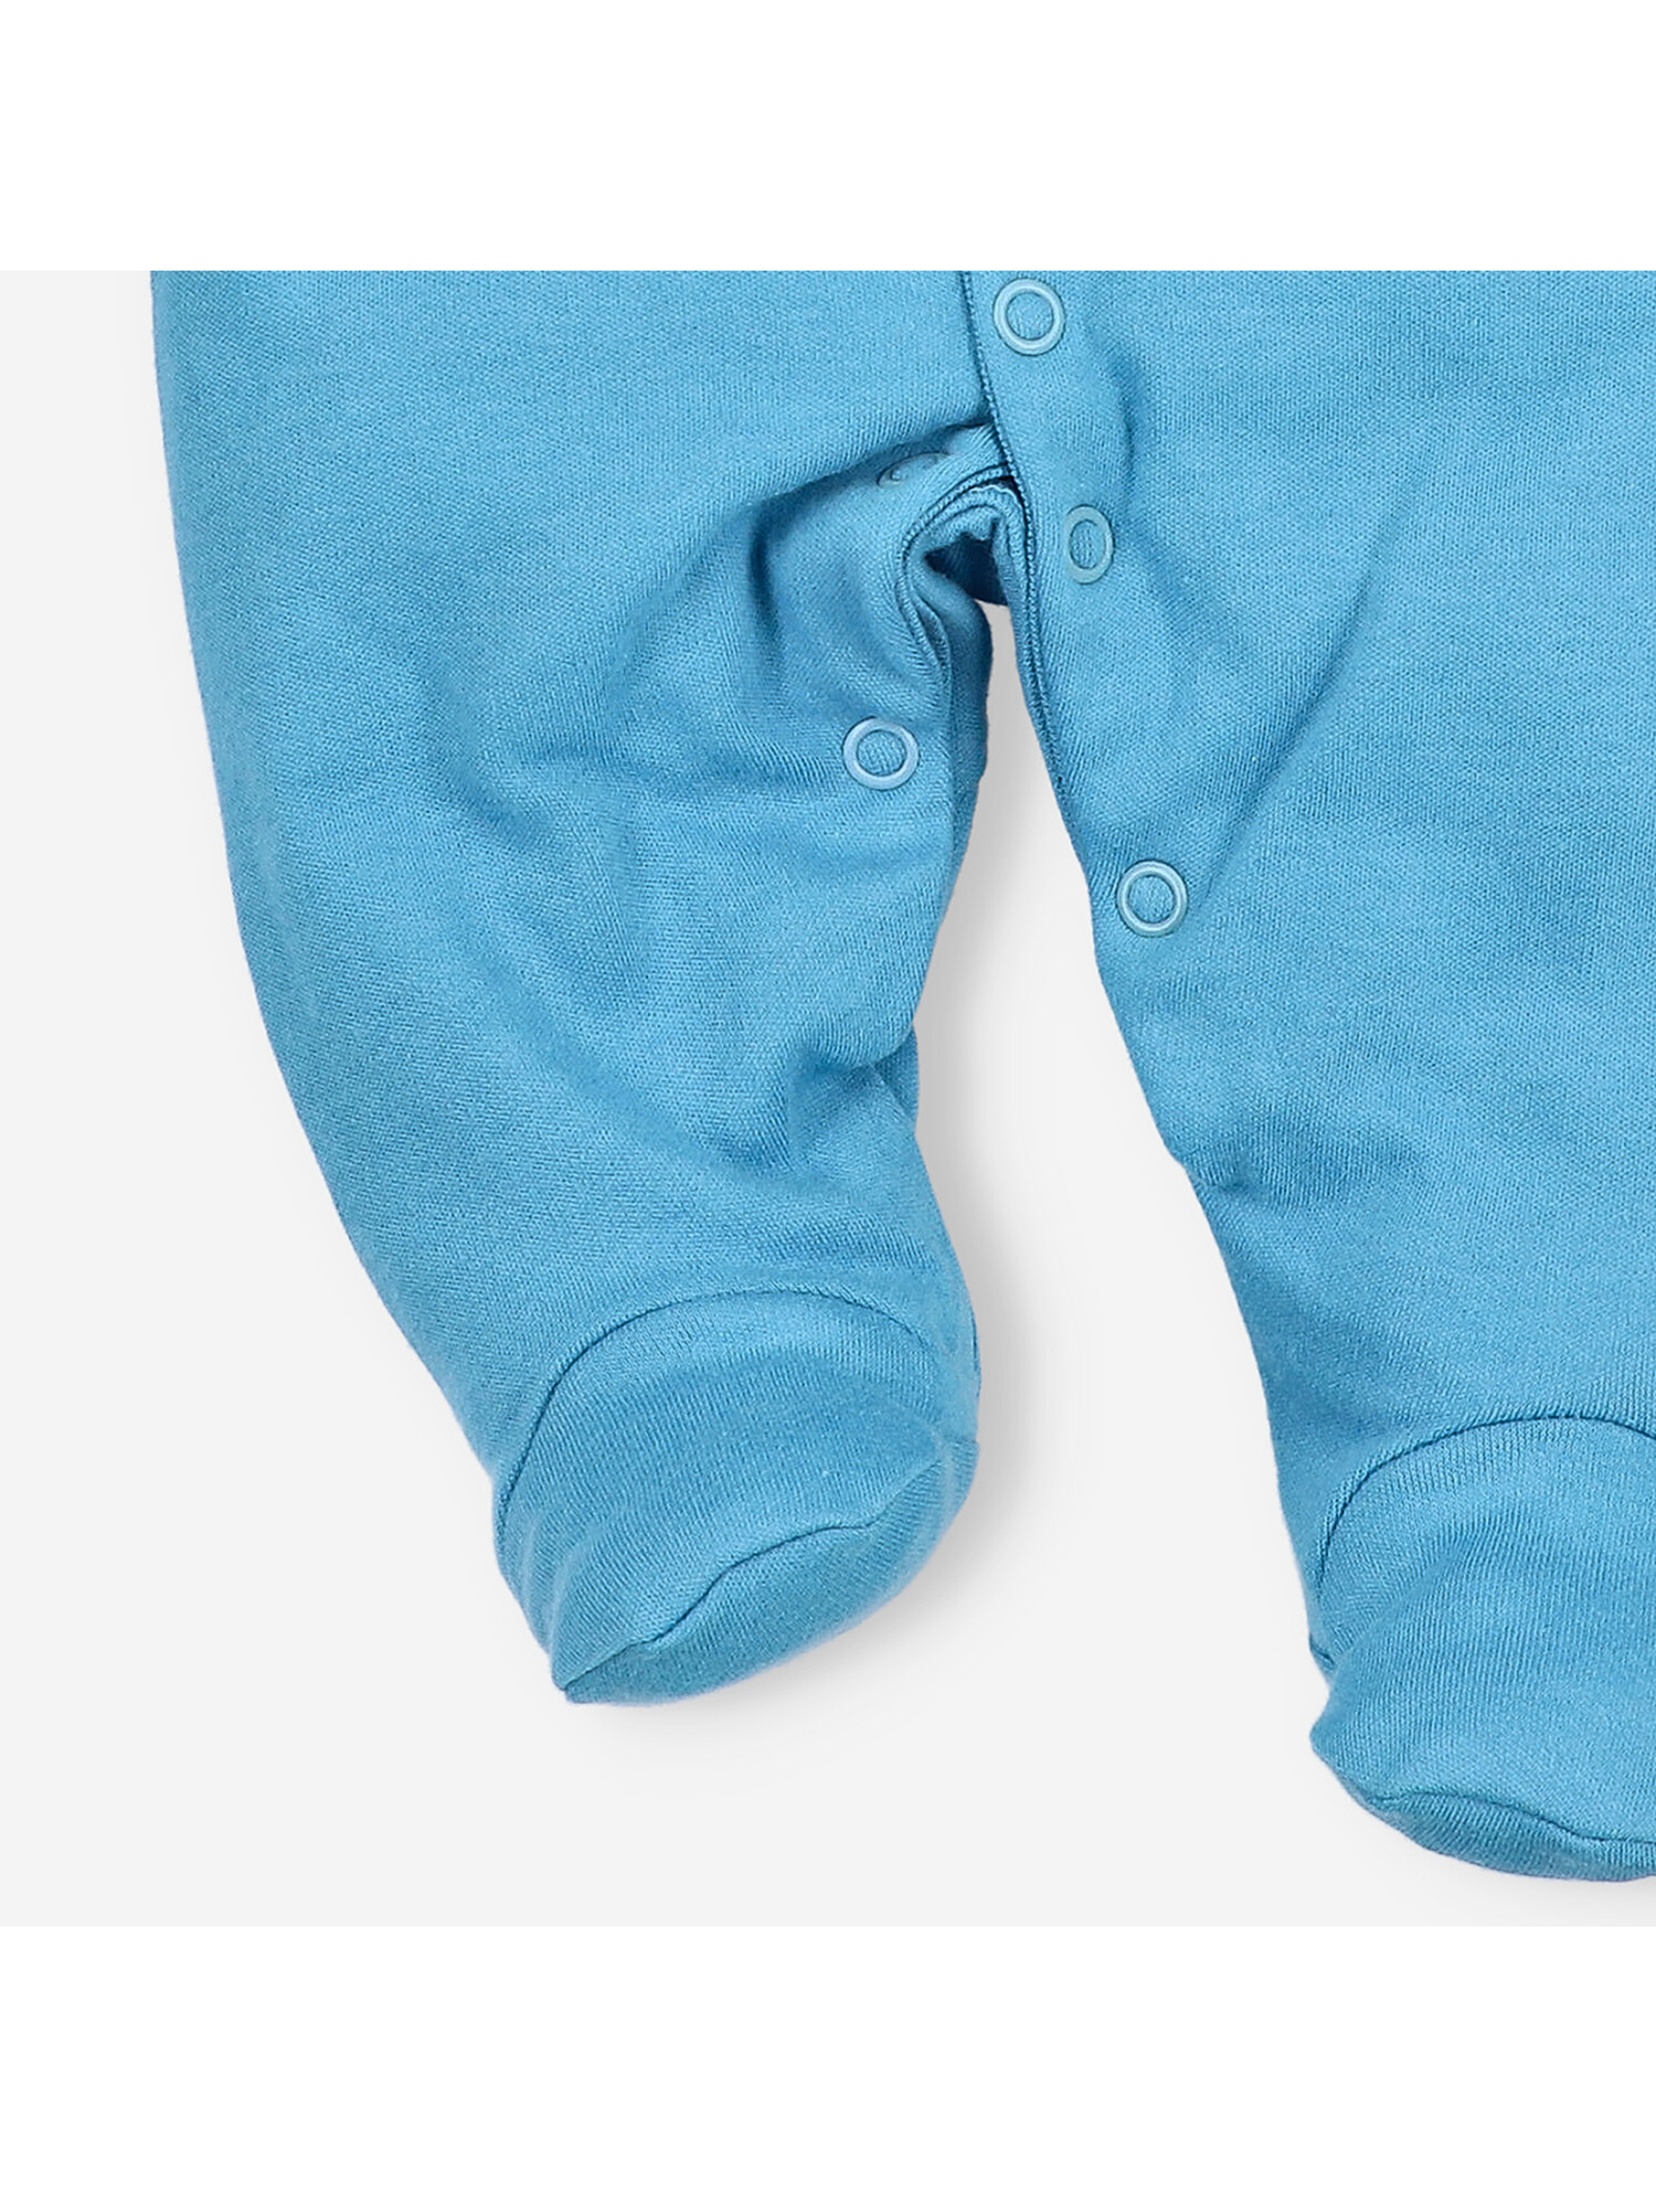 Pajac niemowlęcy z bawełny organicznej dla chłopca niebieski